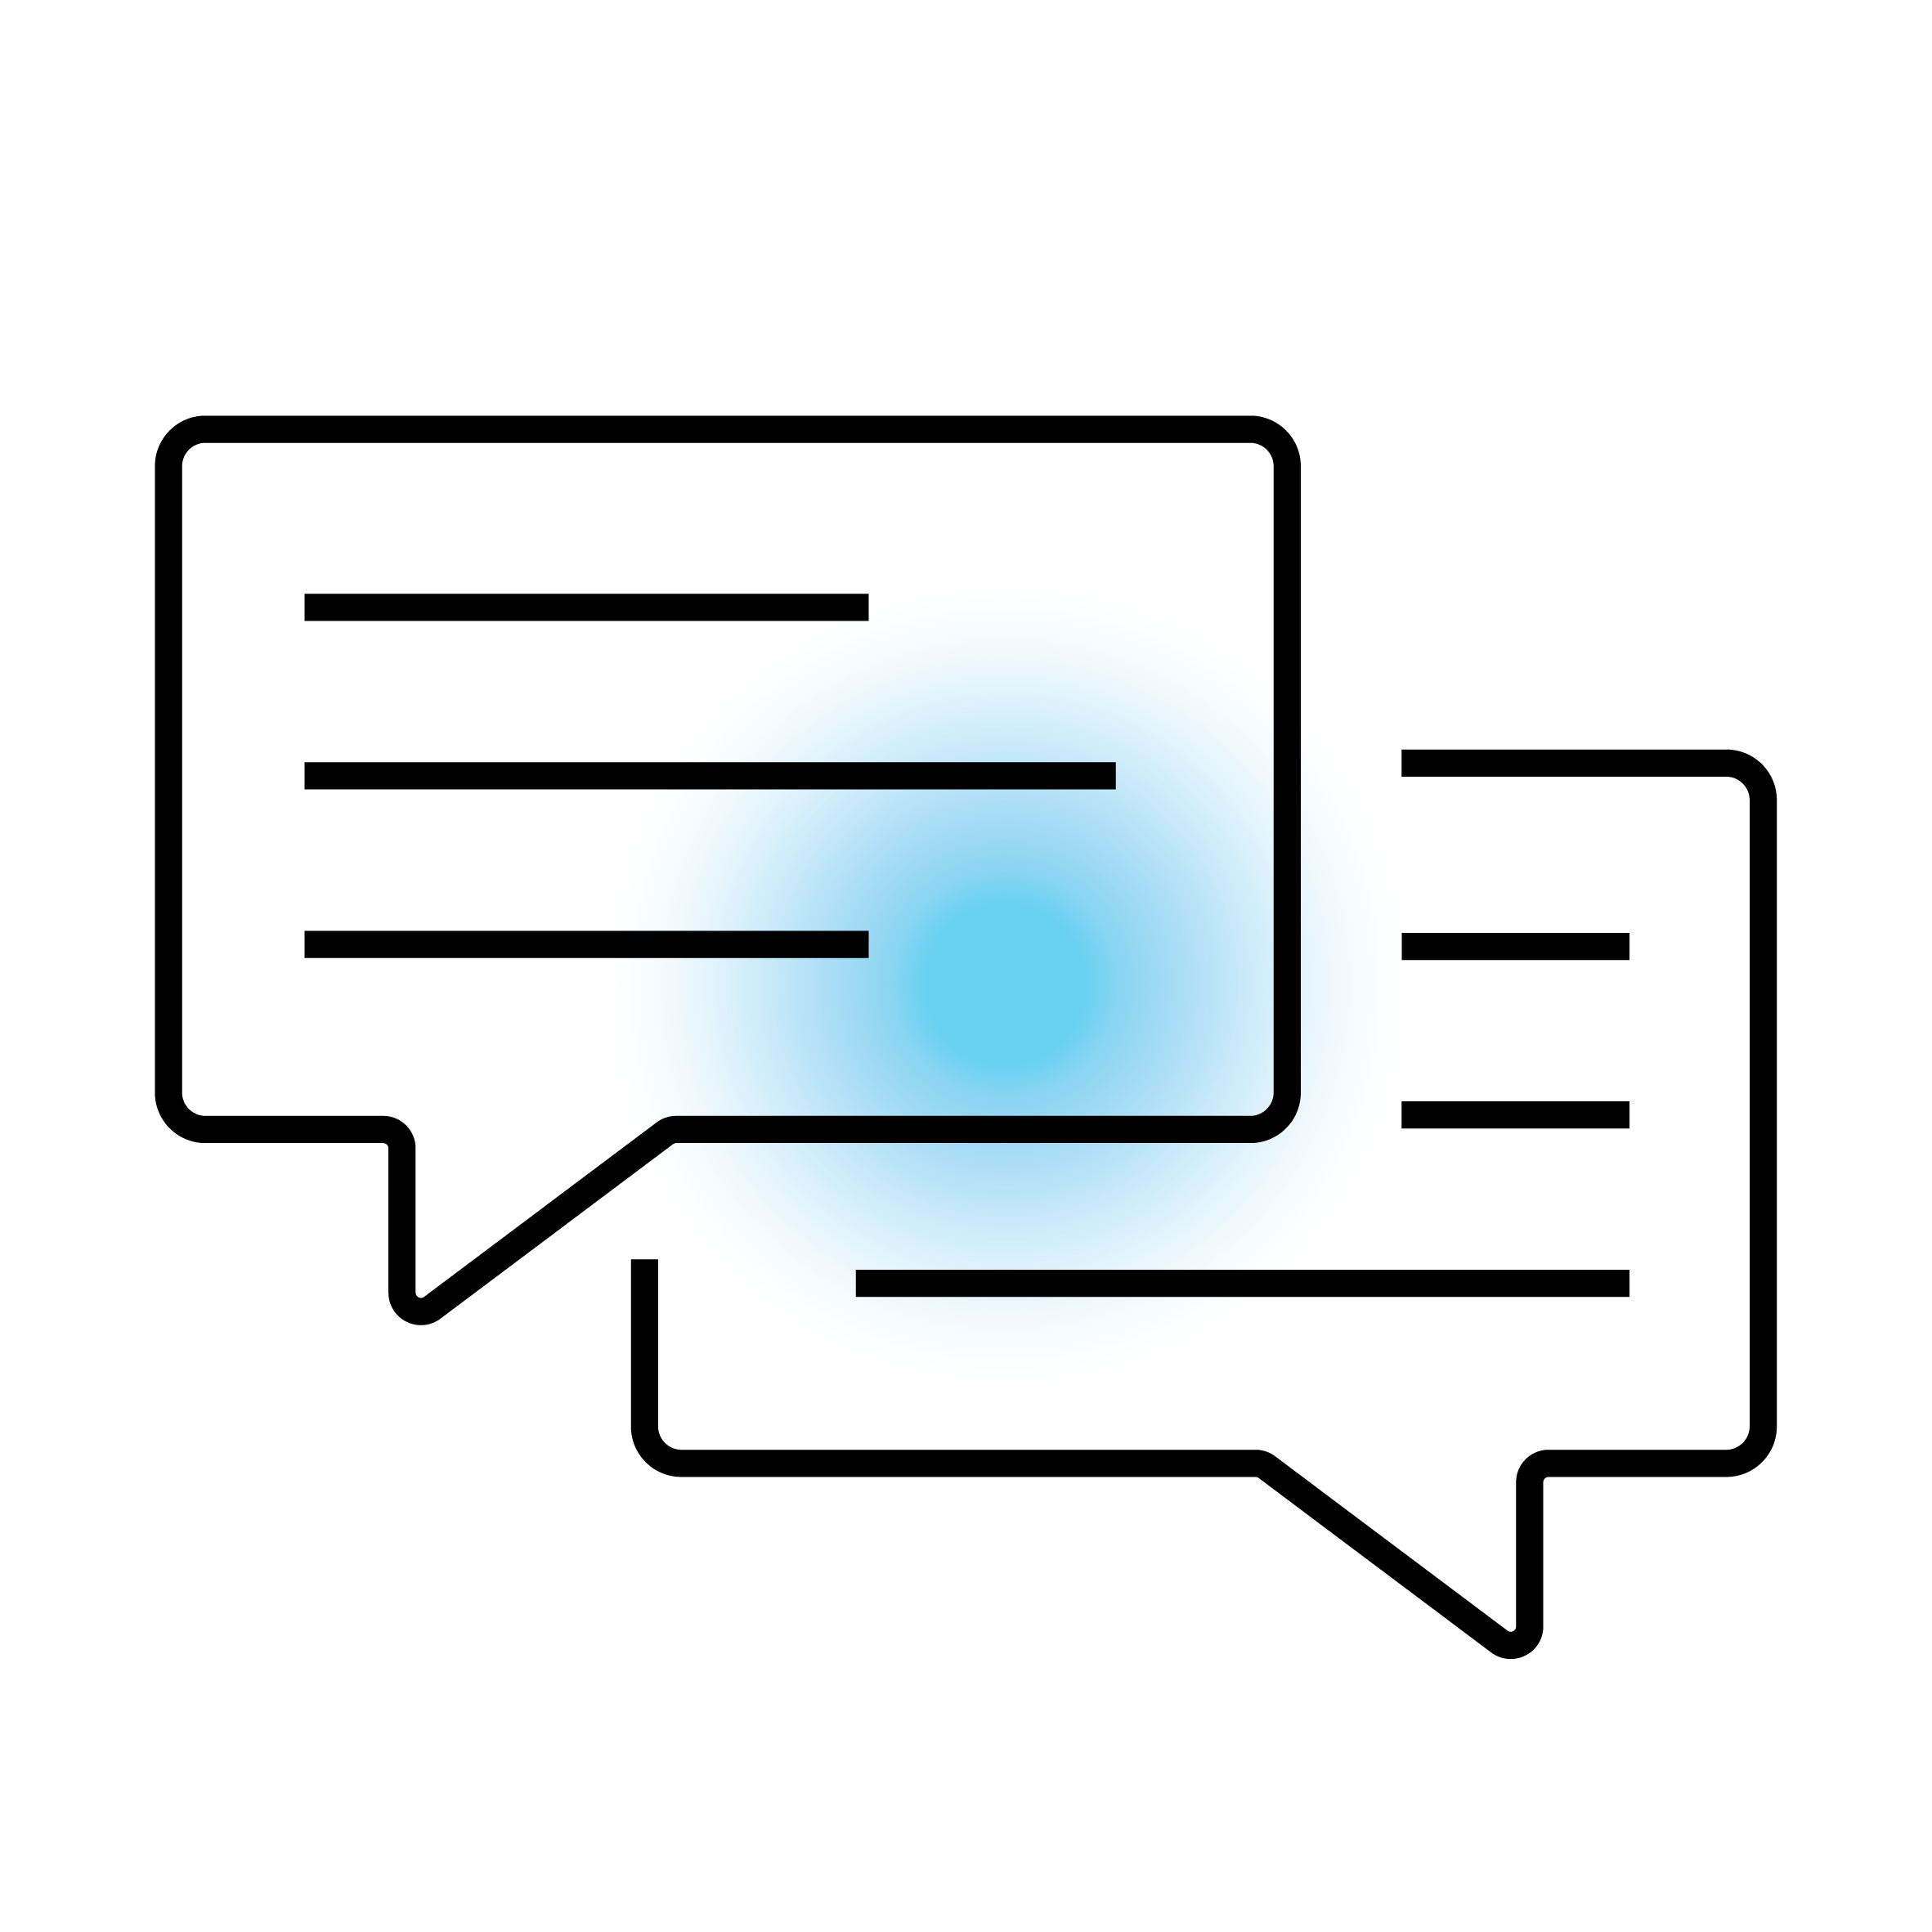 Dialogsprechblasen-Icon mit Textlinien und blauem Punkt